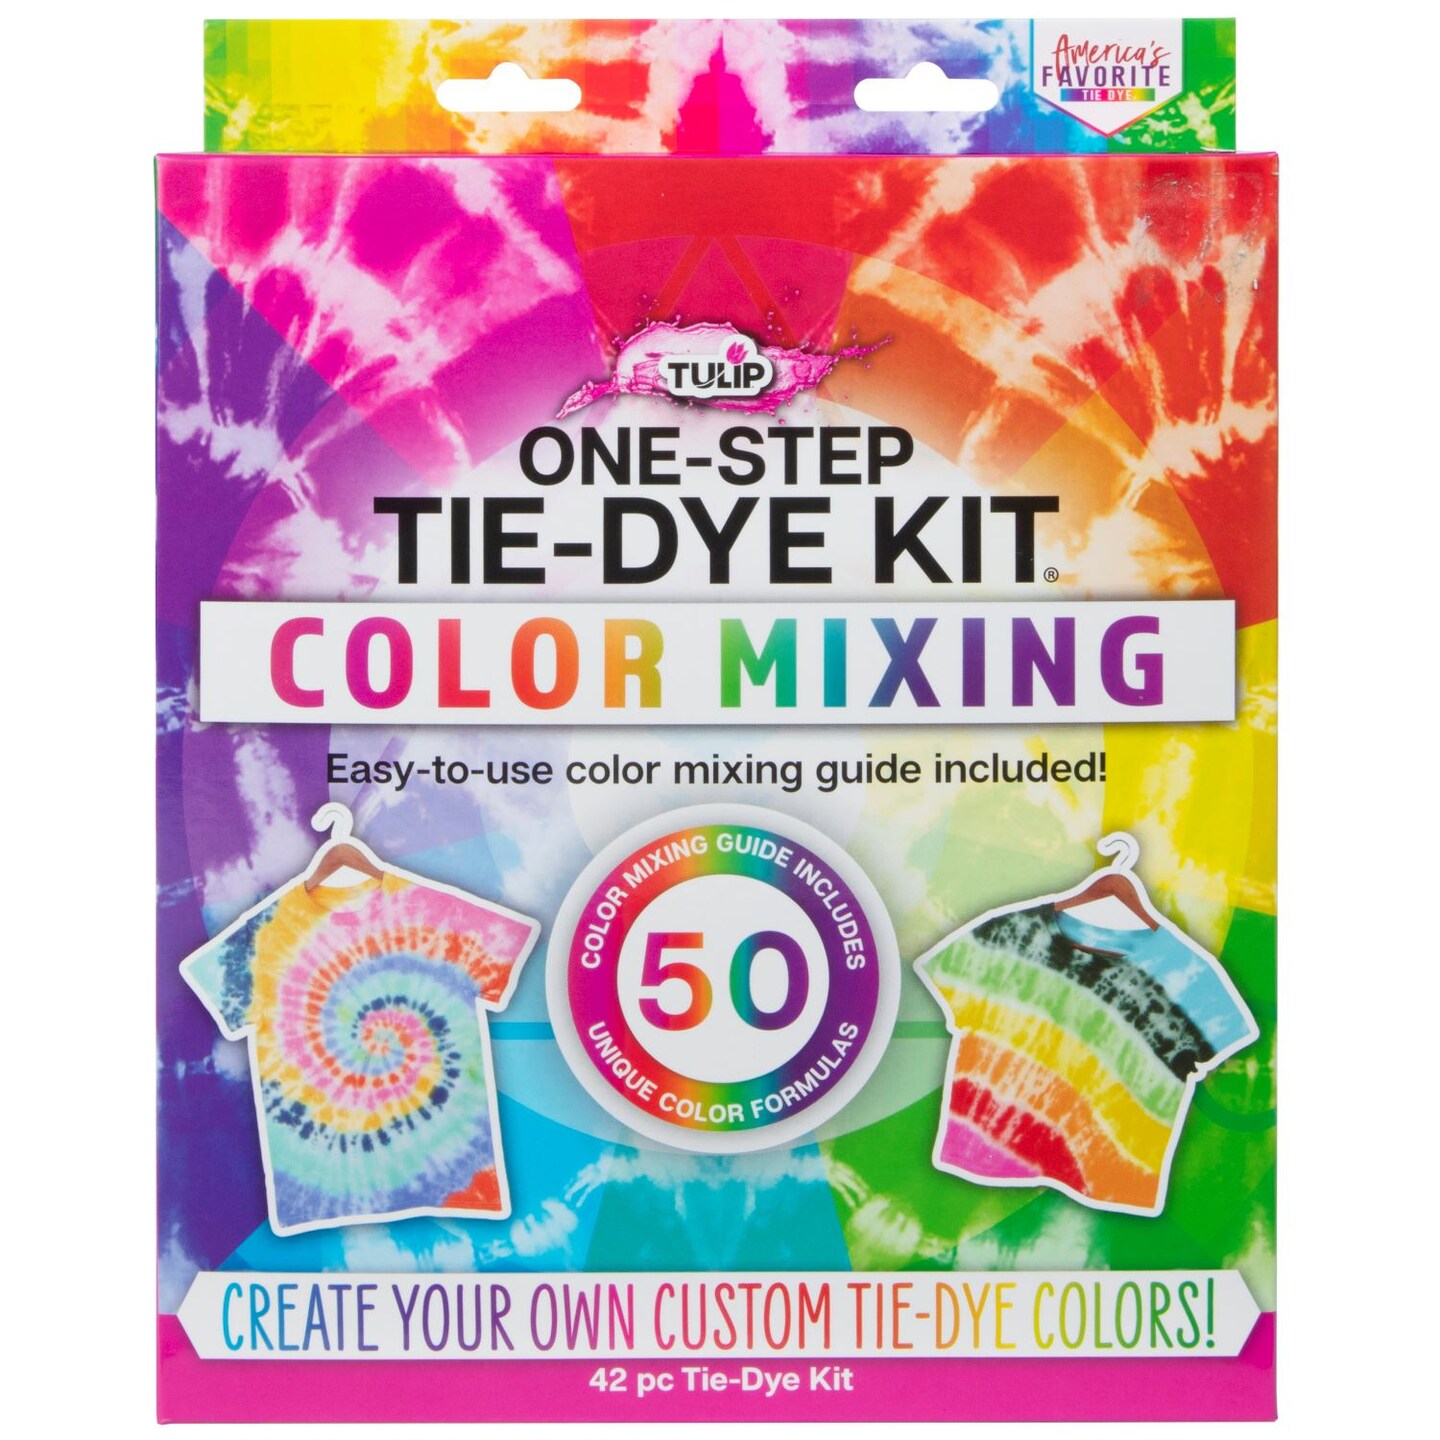 Coral, Orange, Purple Tie Dye Colors in Desert Dreams Tie Dye Kit (Tye Dye Kit). Custom Clothing Dye with 6 Refills for Multiple Projects